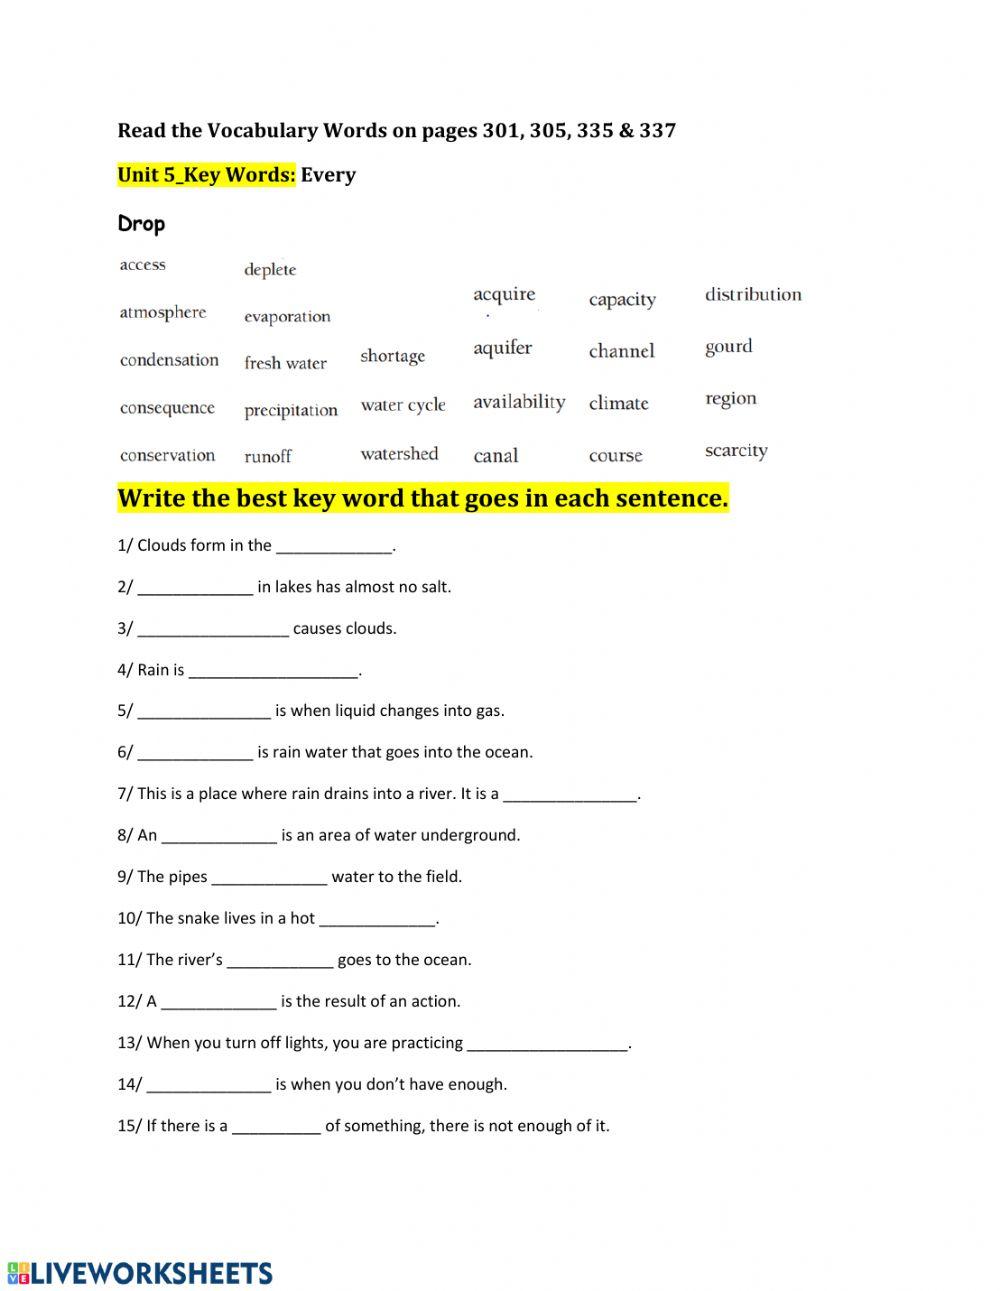 Unit 5 Vocabulary quiz